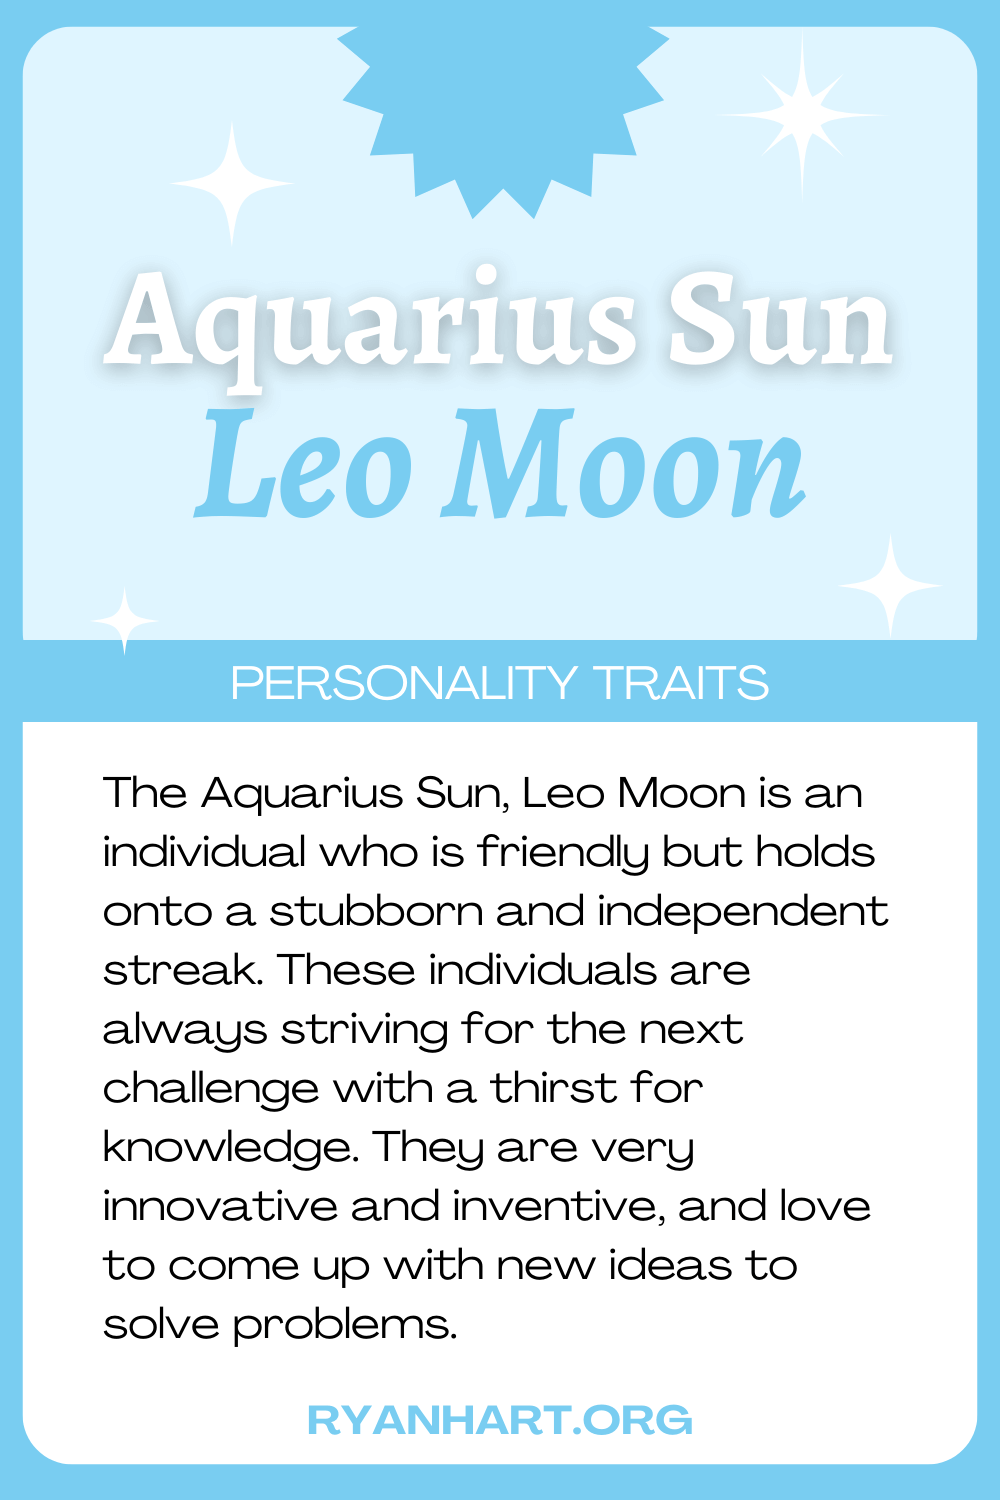  Aquarius Sun Leo Moon ပင်ကိုယ်စရိုက်လက္ခဏာများ